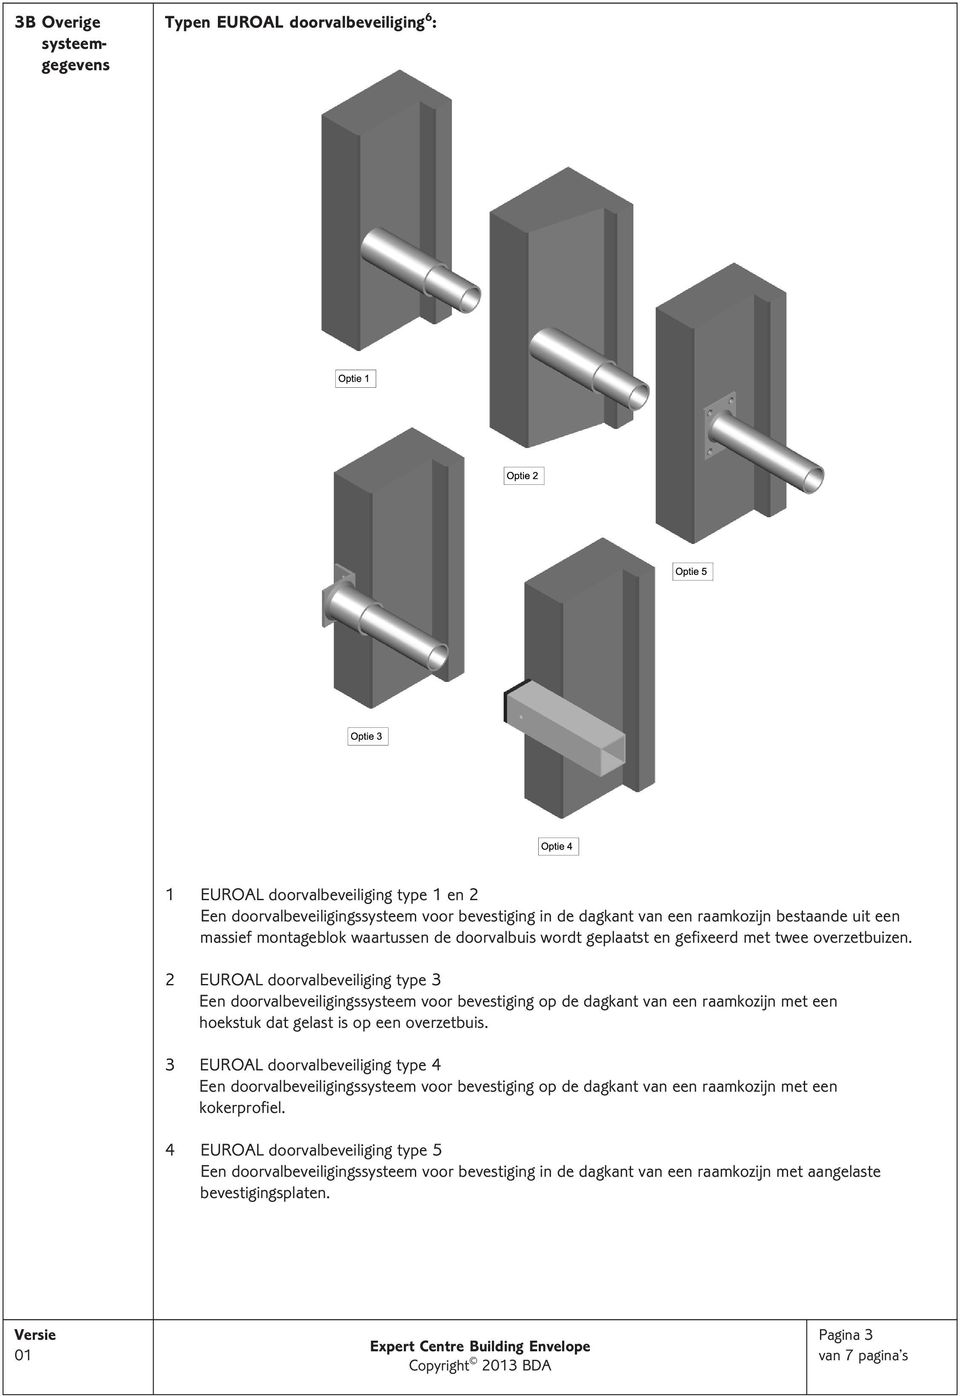 2 EUROAL doorvalbeveiliging type 3 Een doorvalbeveiligingssysteem voor bevestiging op de dagkant van een raamkozijn met een hoekstuk dat gelast is op een overzetbuis.